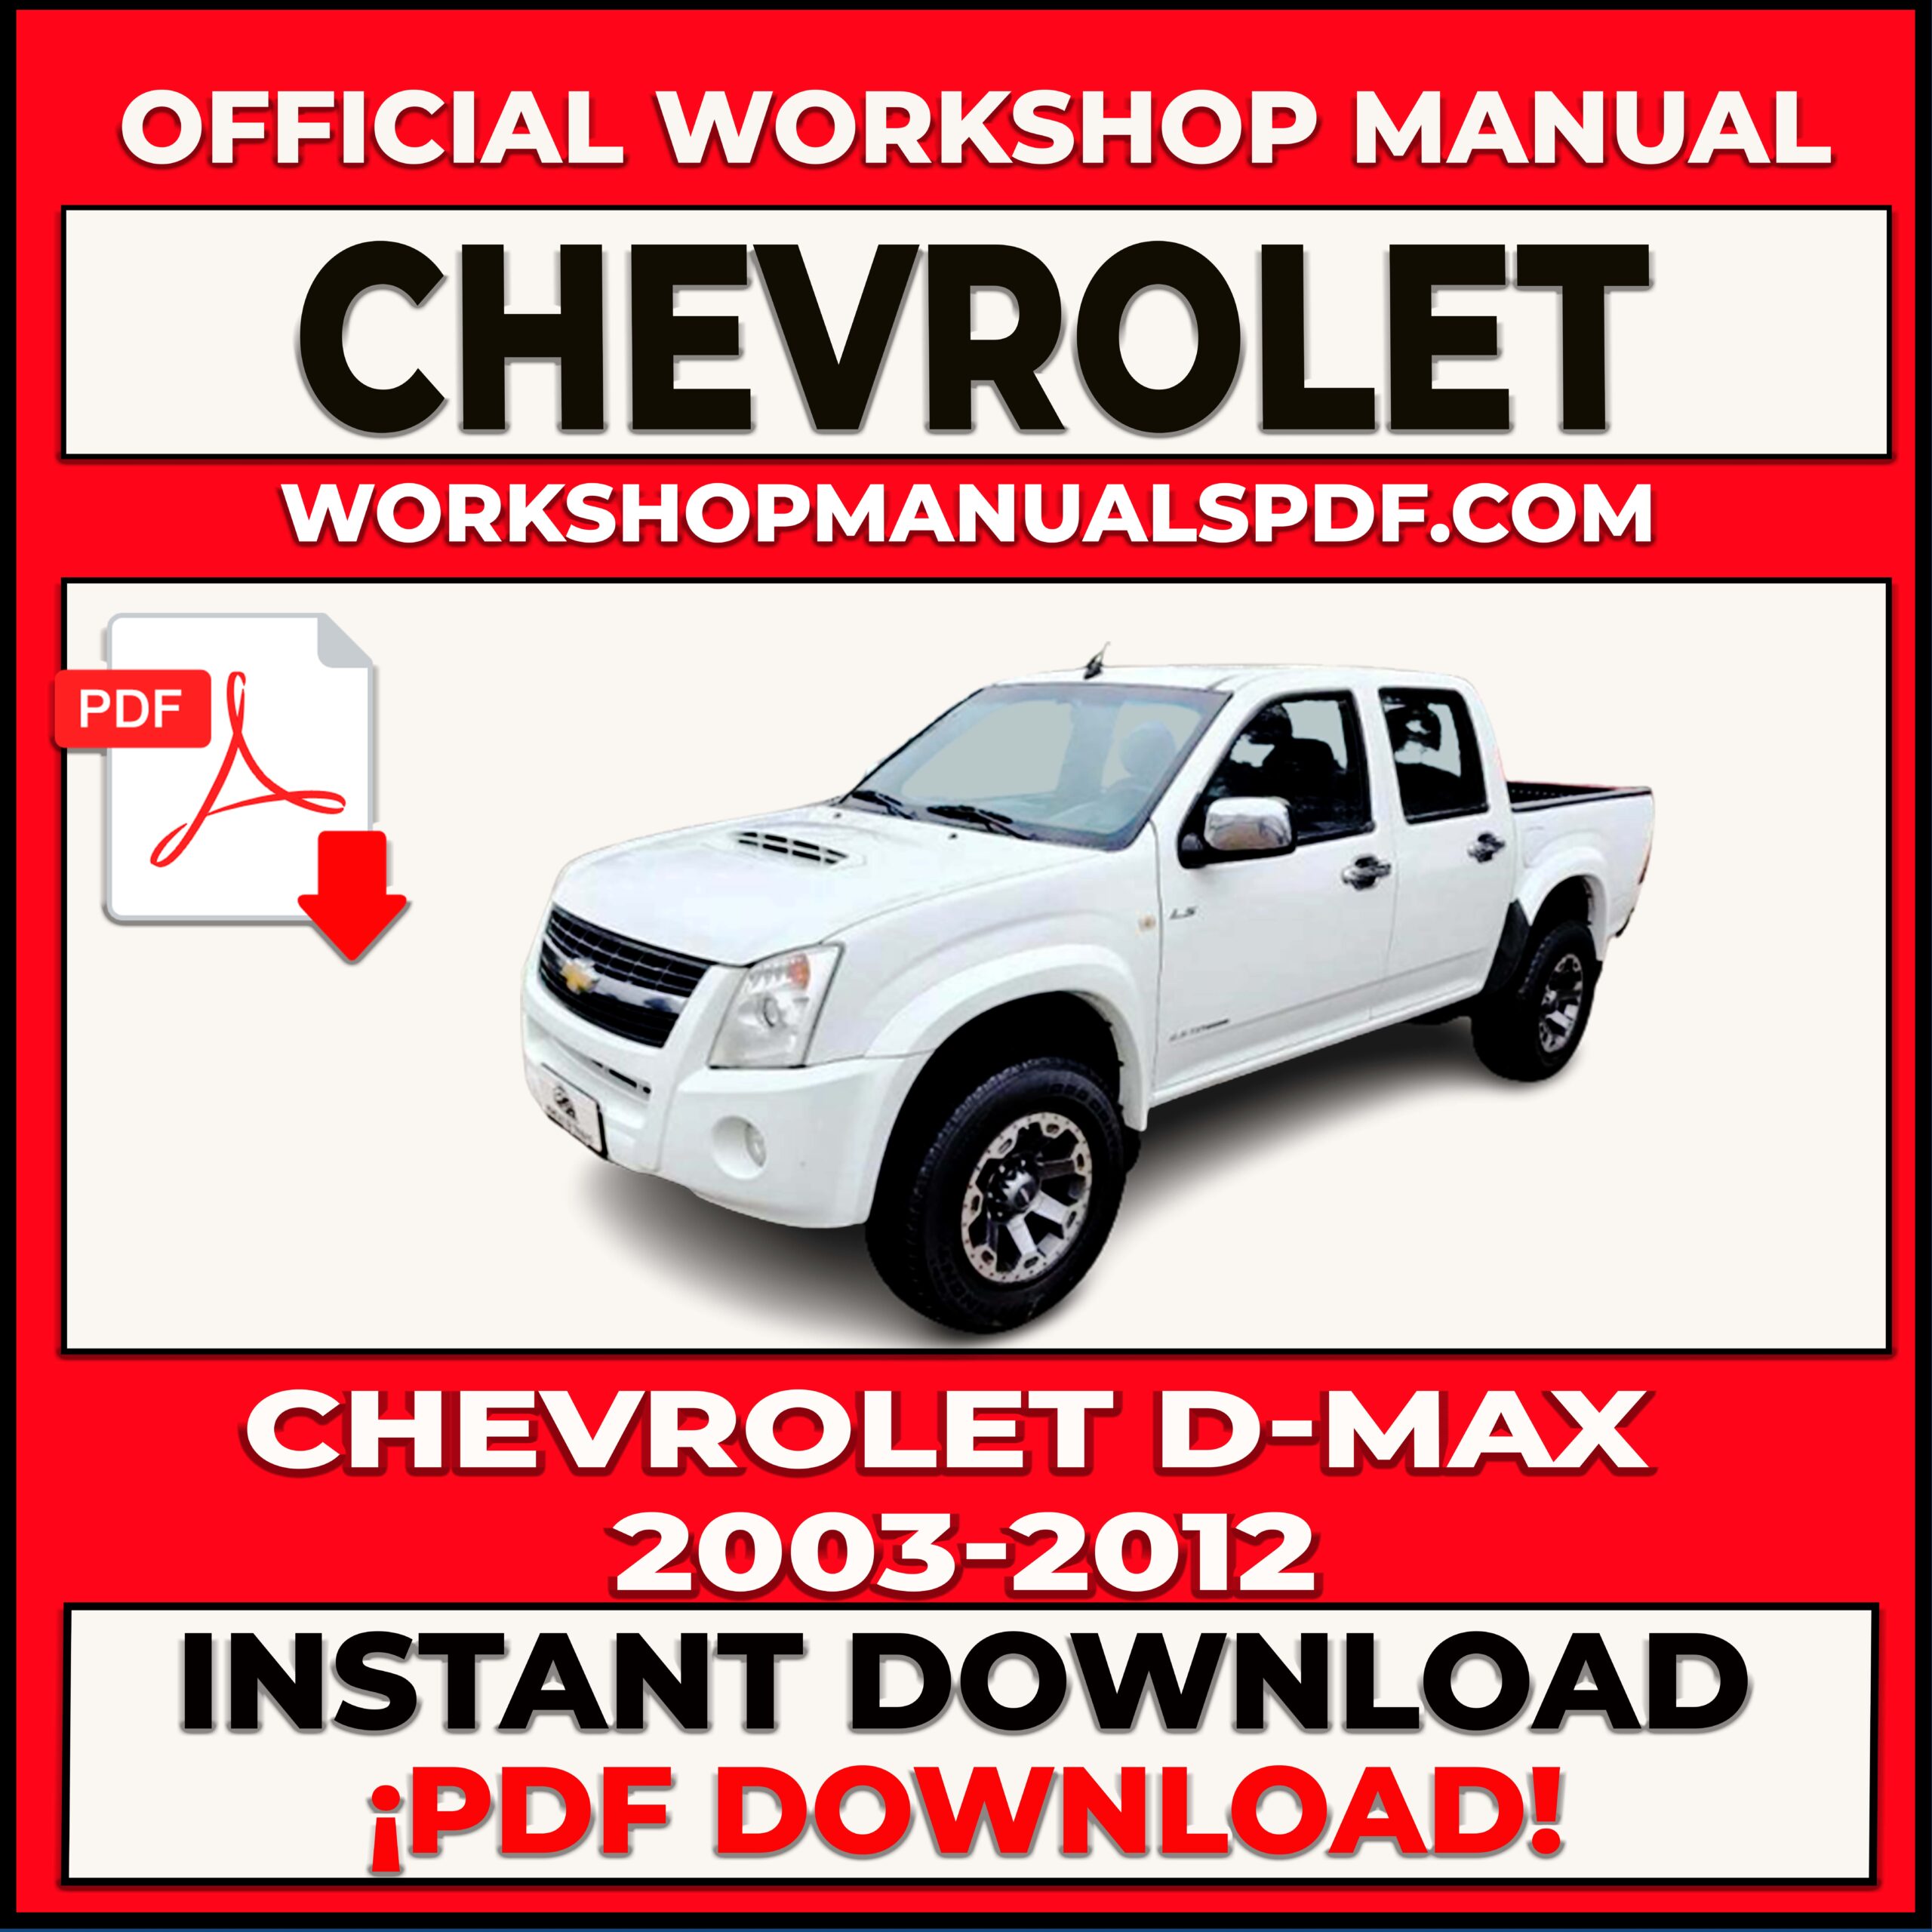 Chevrolet D-MAX 2003-2012 Workshop Repair Manual